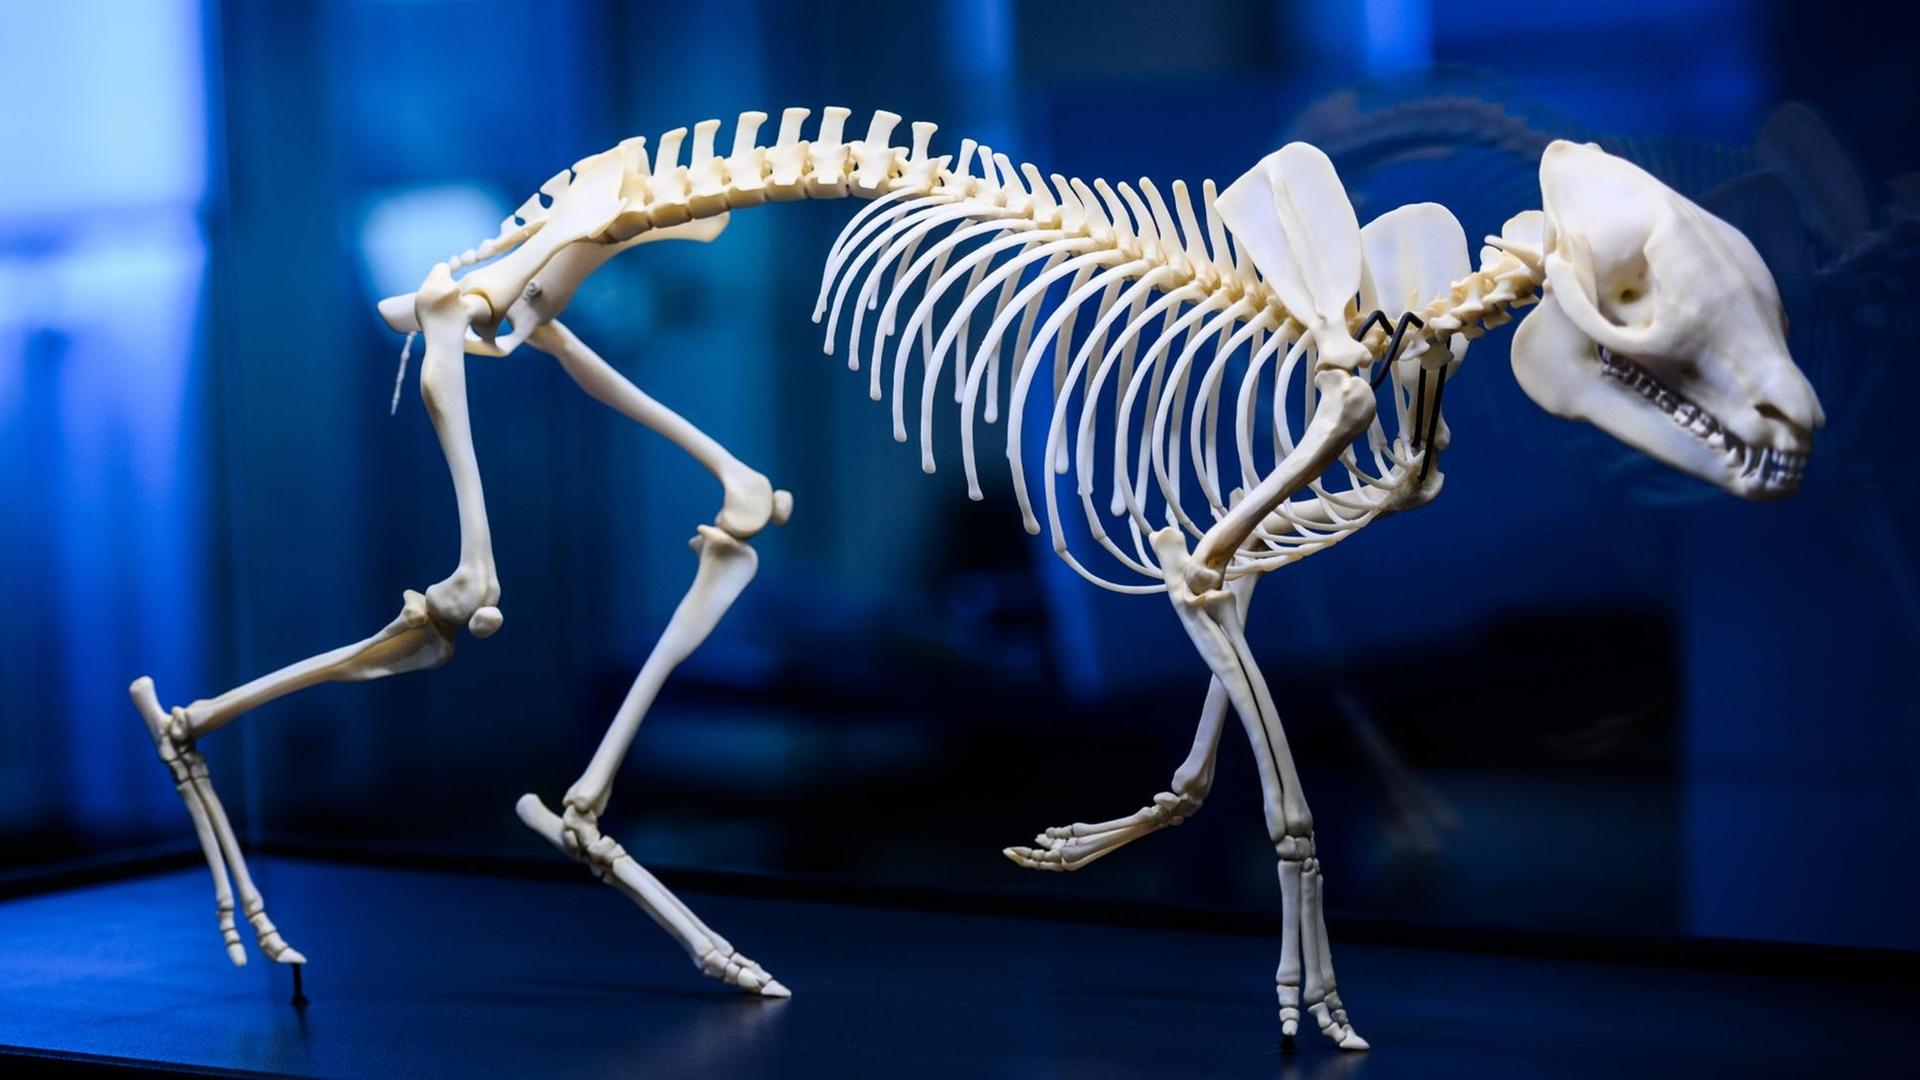 Eine 3-D-Skelett-Montage, dass «Messeler Urpferd», steht in einer Vitrine. Das Hessische Landesmuseum Darmstadt widmet sich im Jubiläumsjahr dem «Messeler Urpferd». Der Fund des vollständigen erhaltenen Skelettes wurde unter anderem mit Hilfe modernster Technik zu einer 3D Skelett-Montage rekonstruiert.